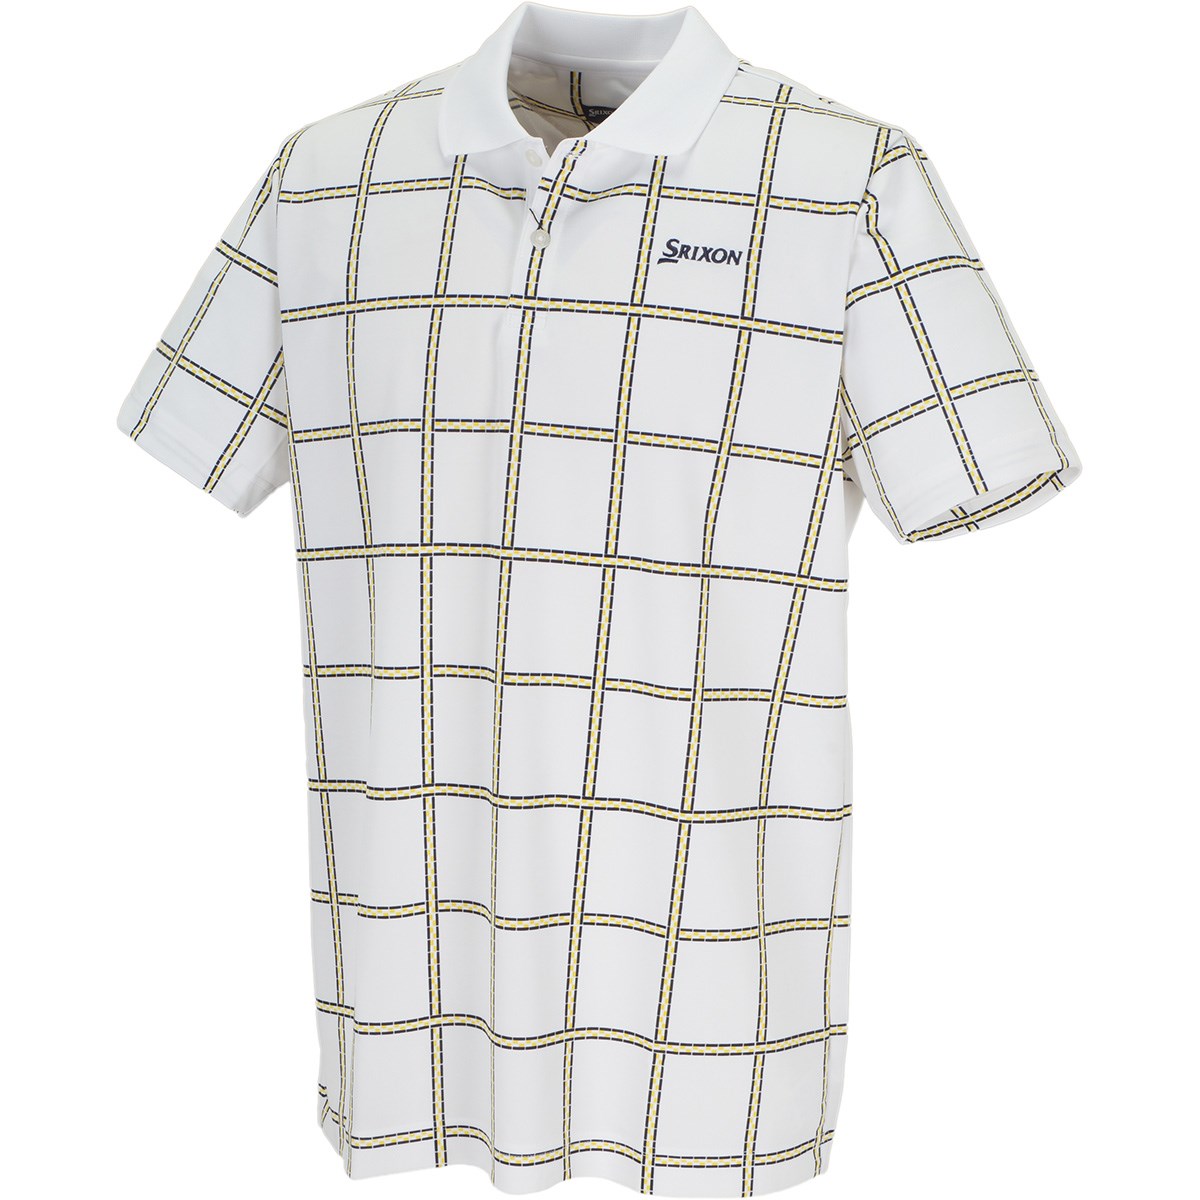 スリクソンゴルフ COOLISTクロスストライププリント半袖ポロシャツ 